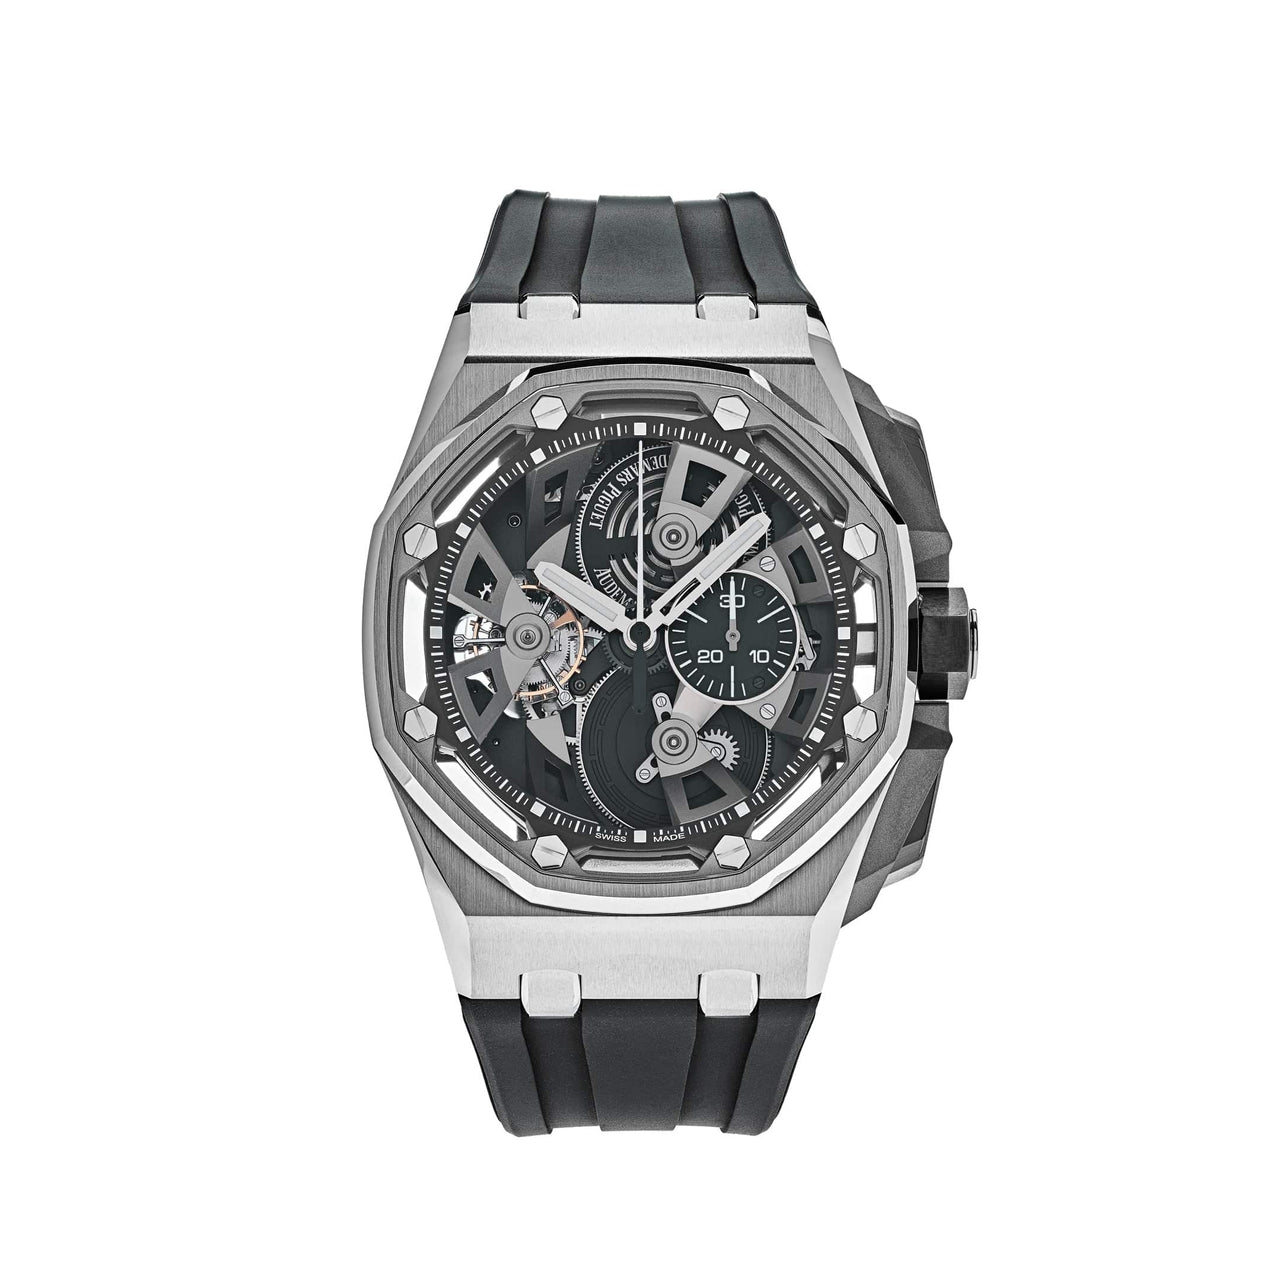 Luxury Watch Audemars Piguet Royal Oak Offshore Tourbillon Chronograph Limited to 50pcs 26421ST.OO.A002CA.01 Wrist Aficionado